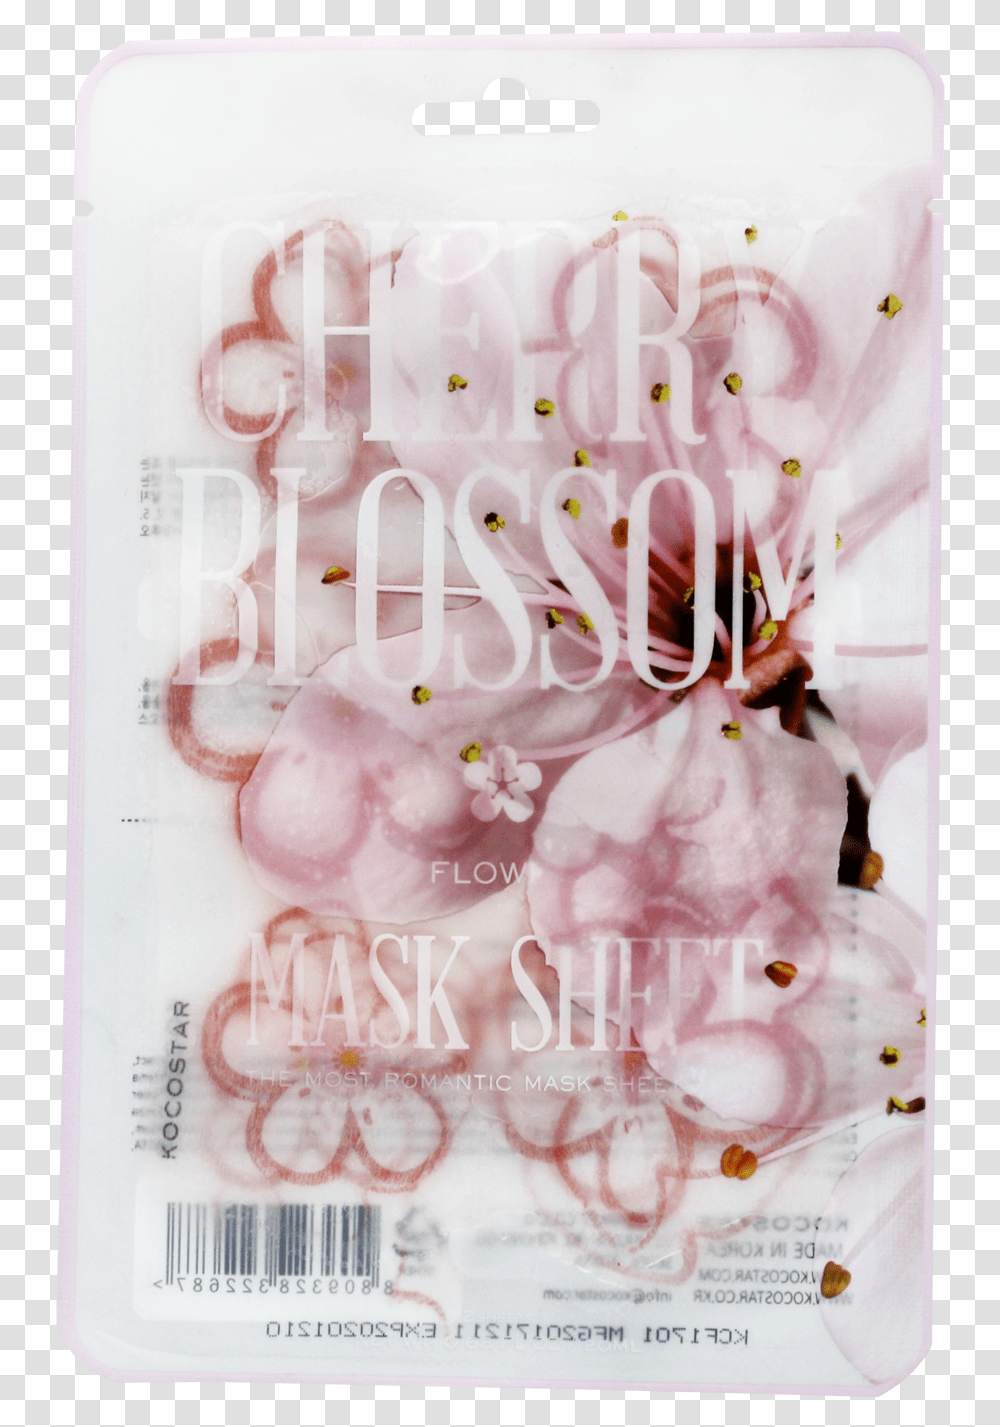 Mascarilla De Cherry Blossom Hi Res Smartphone, Icing, Cream, Cake, Dessert Transparent Png